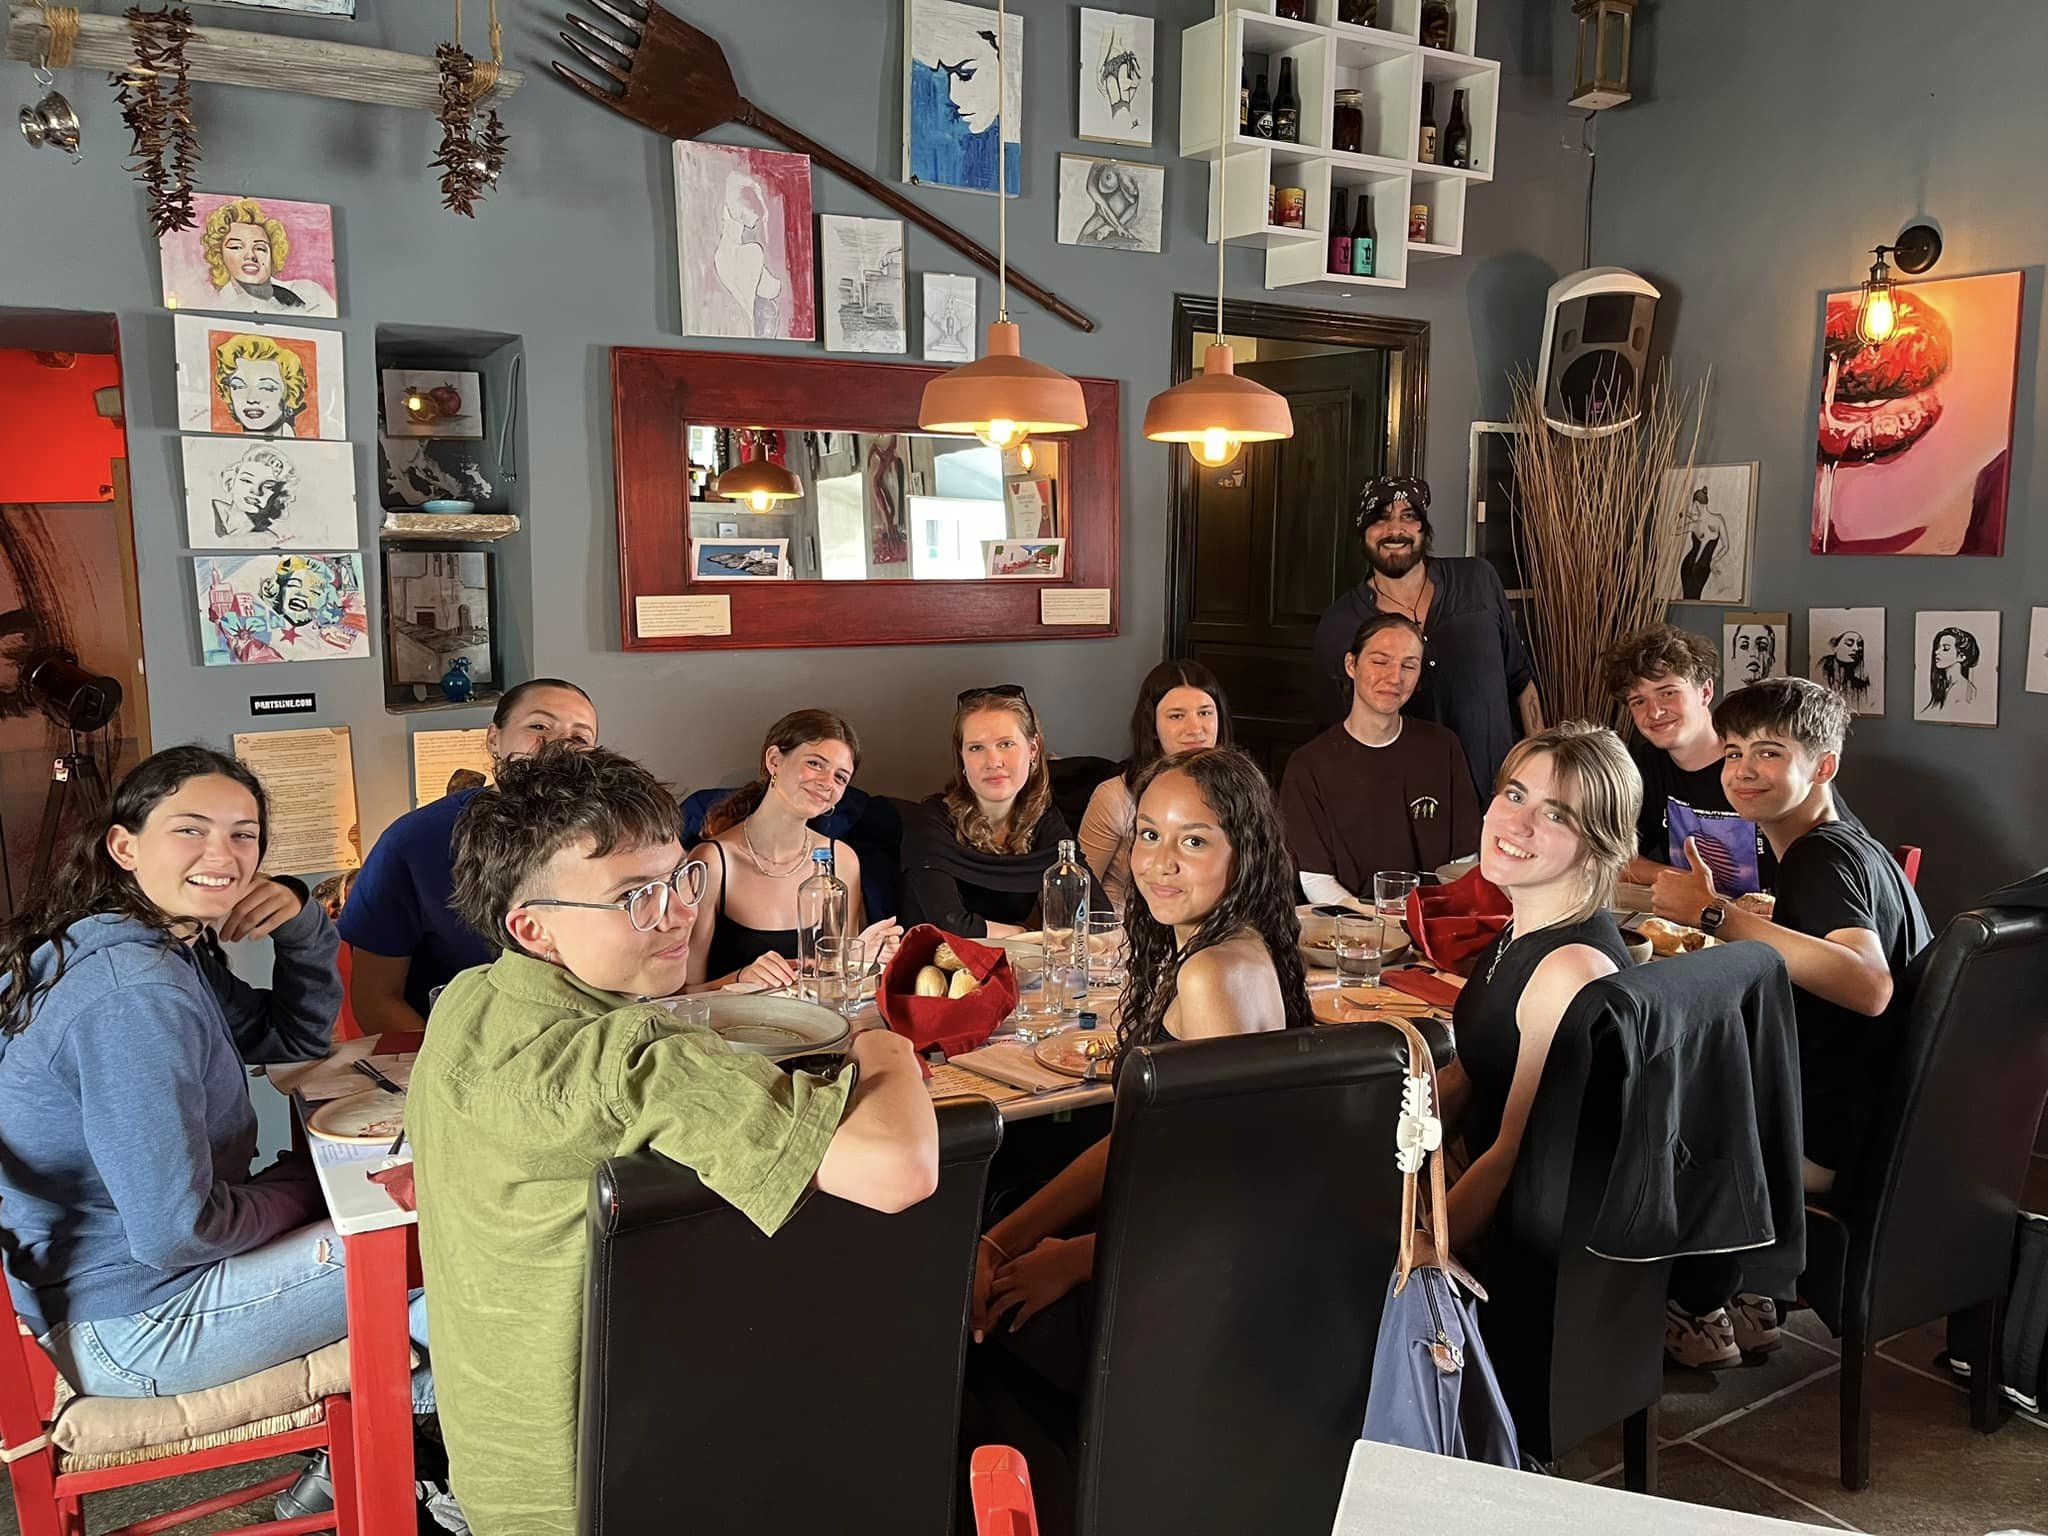 W dniach 14-21 kwietnia grupa 11 uczniów pod opieką p. Agnieszki Gemborys i p. Katarzyny Ścisłowicz spędziła wspaniałe chwile w Grecji na pięknej wyspie Sifnos. Wyjazd odbył się w ramach projektu Erasmus+ „Troskliwa Szkoła - Zjednoczeni w Różnorodności,”, w greckiej restauracji